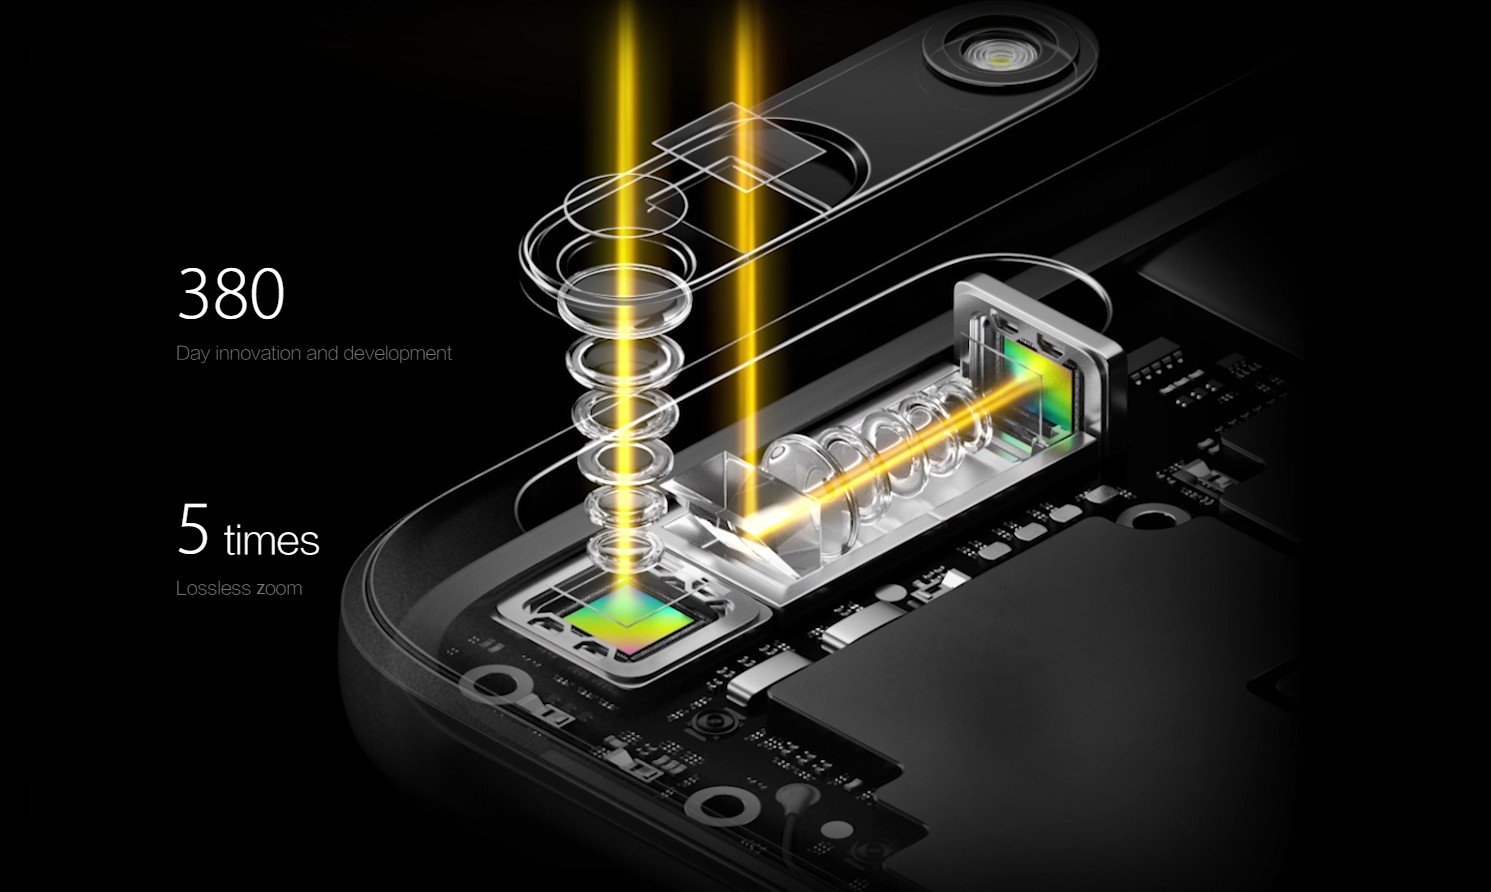 Oppo kamera çıkıntısı olmadan 5x optik yakınlaştırma yapabilen çift kamera modülünü tanıttı